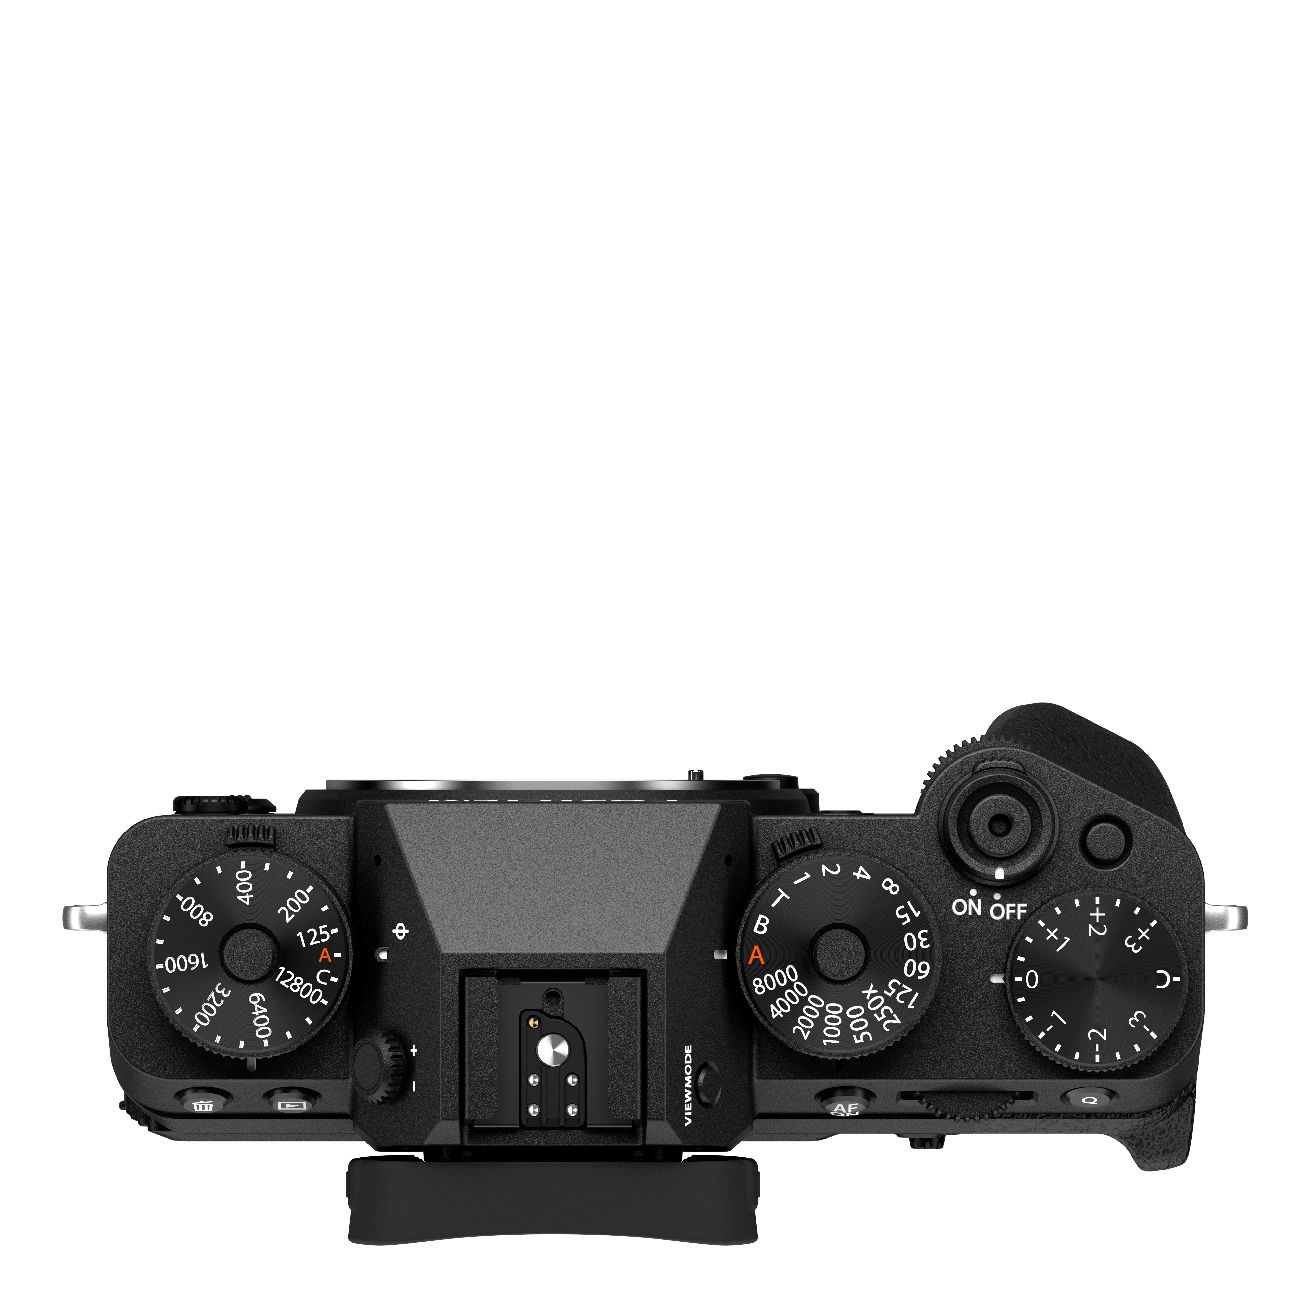 Fujifilm X-T5 schwarz + XF18-55mm 2.8-4 R.0 LM OIS